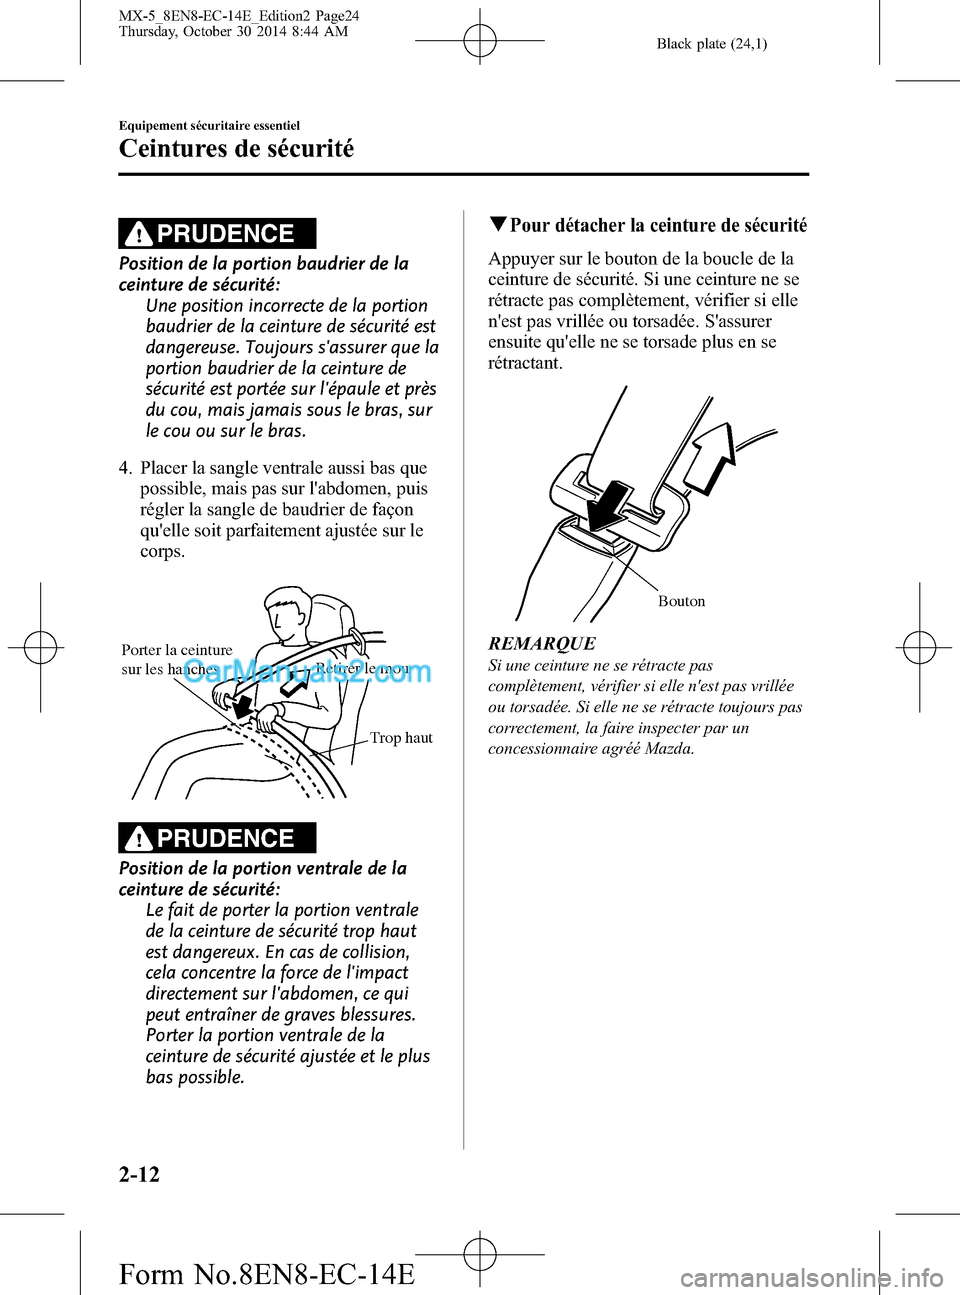 MAZDA MODEL MX-5 2015  Manuel du propriétaire (in French) Black plate (24,1)
PRUDENCE
Position de la portion baudrier de la
ceinture de sécurité:
Une position incorrecte de la portion
baudrier de la ceinture de sécurité est
dangereuse. Toujours sassurer